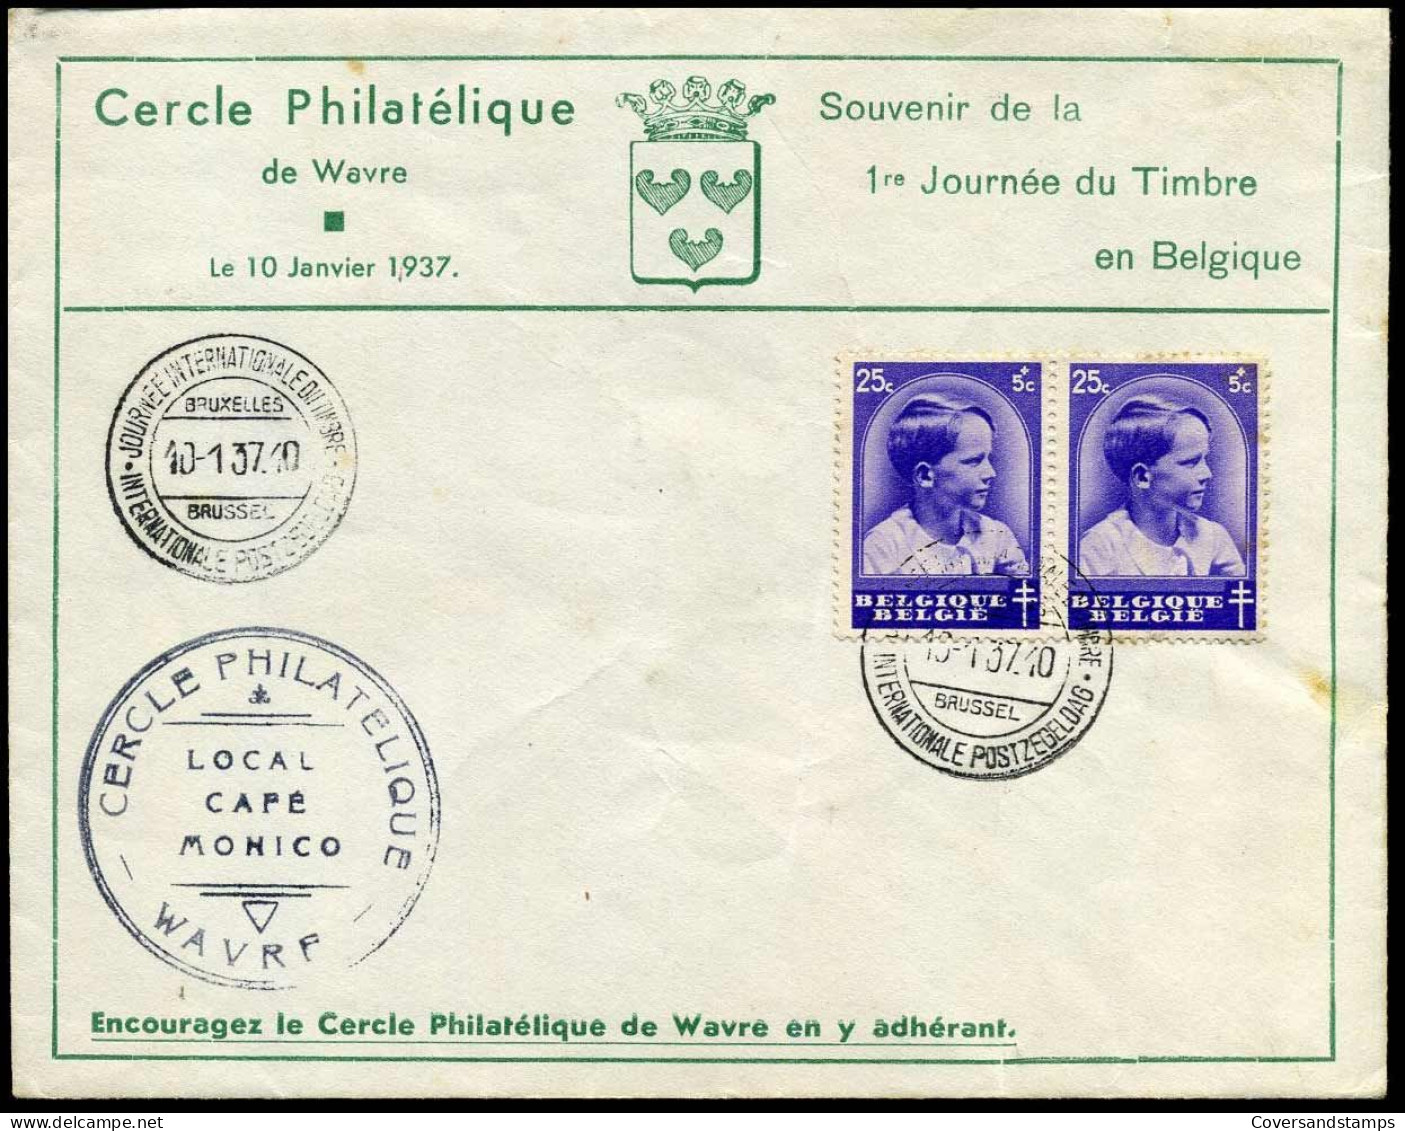 439 In Paar - Cercle Philatélique De Wavre - Souvenir De La 1re Journée Du Timbre En Belgique - Lettres & Documents